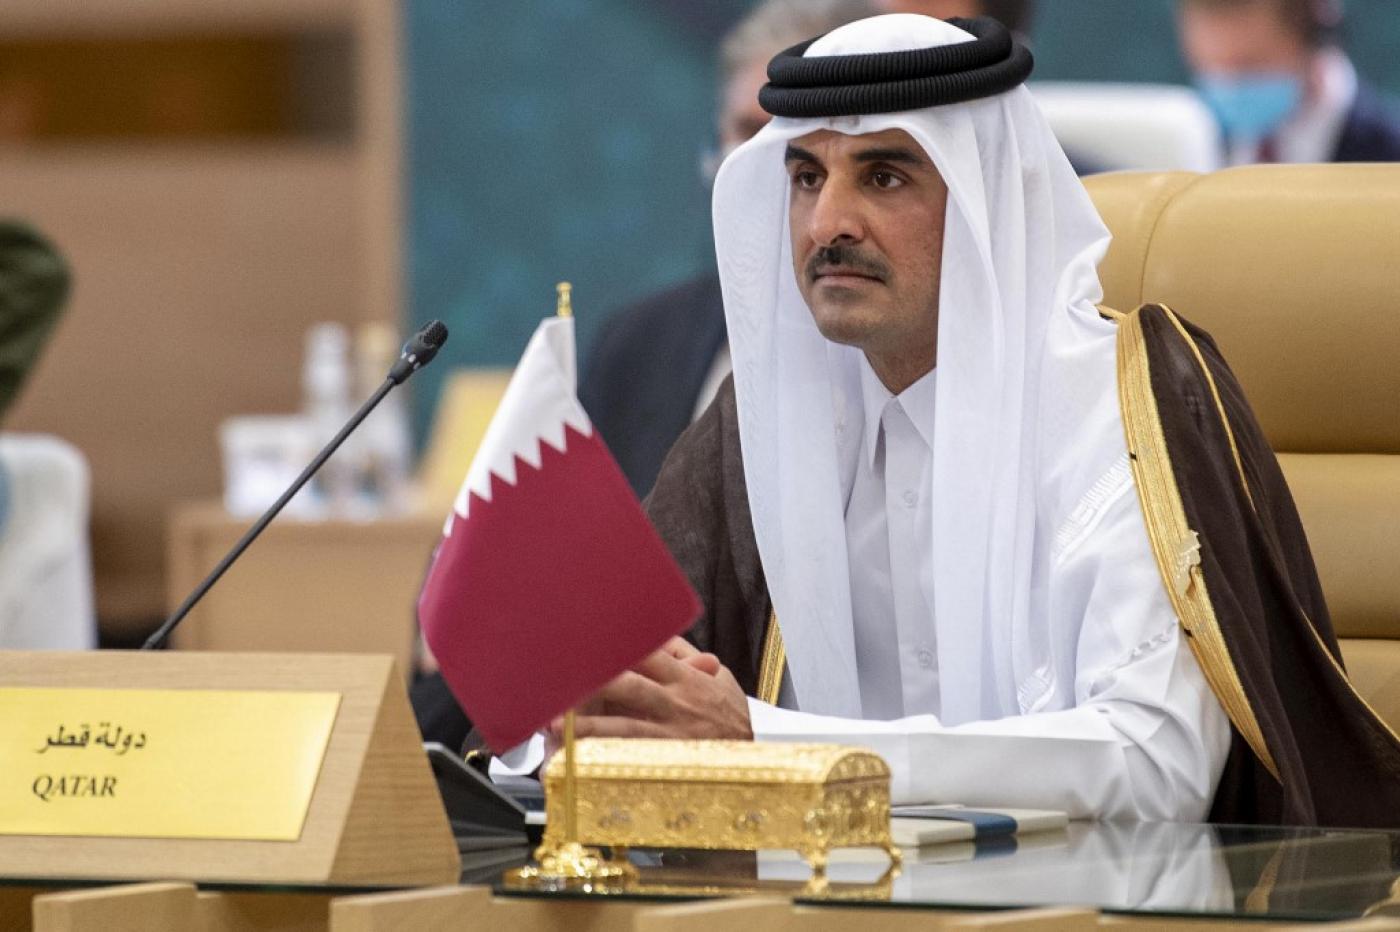 خطاب أمير قطر أمام مجلس الشورى يرسم خطاً تحت الانقسامات القبلية والمغامرات الإقليمية watanserb.com